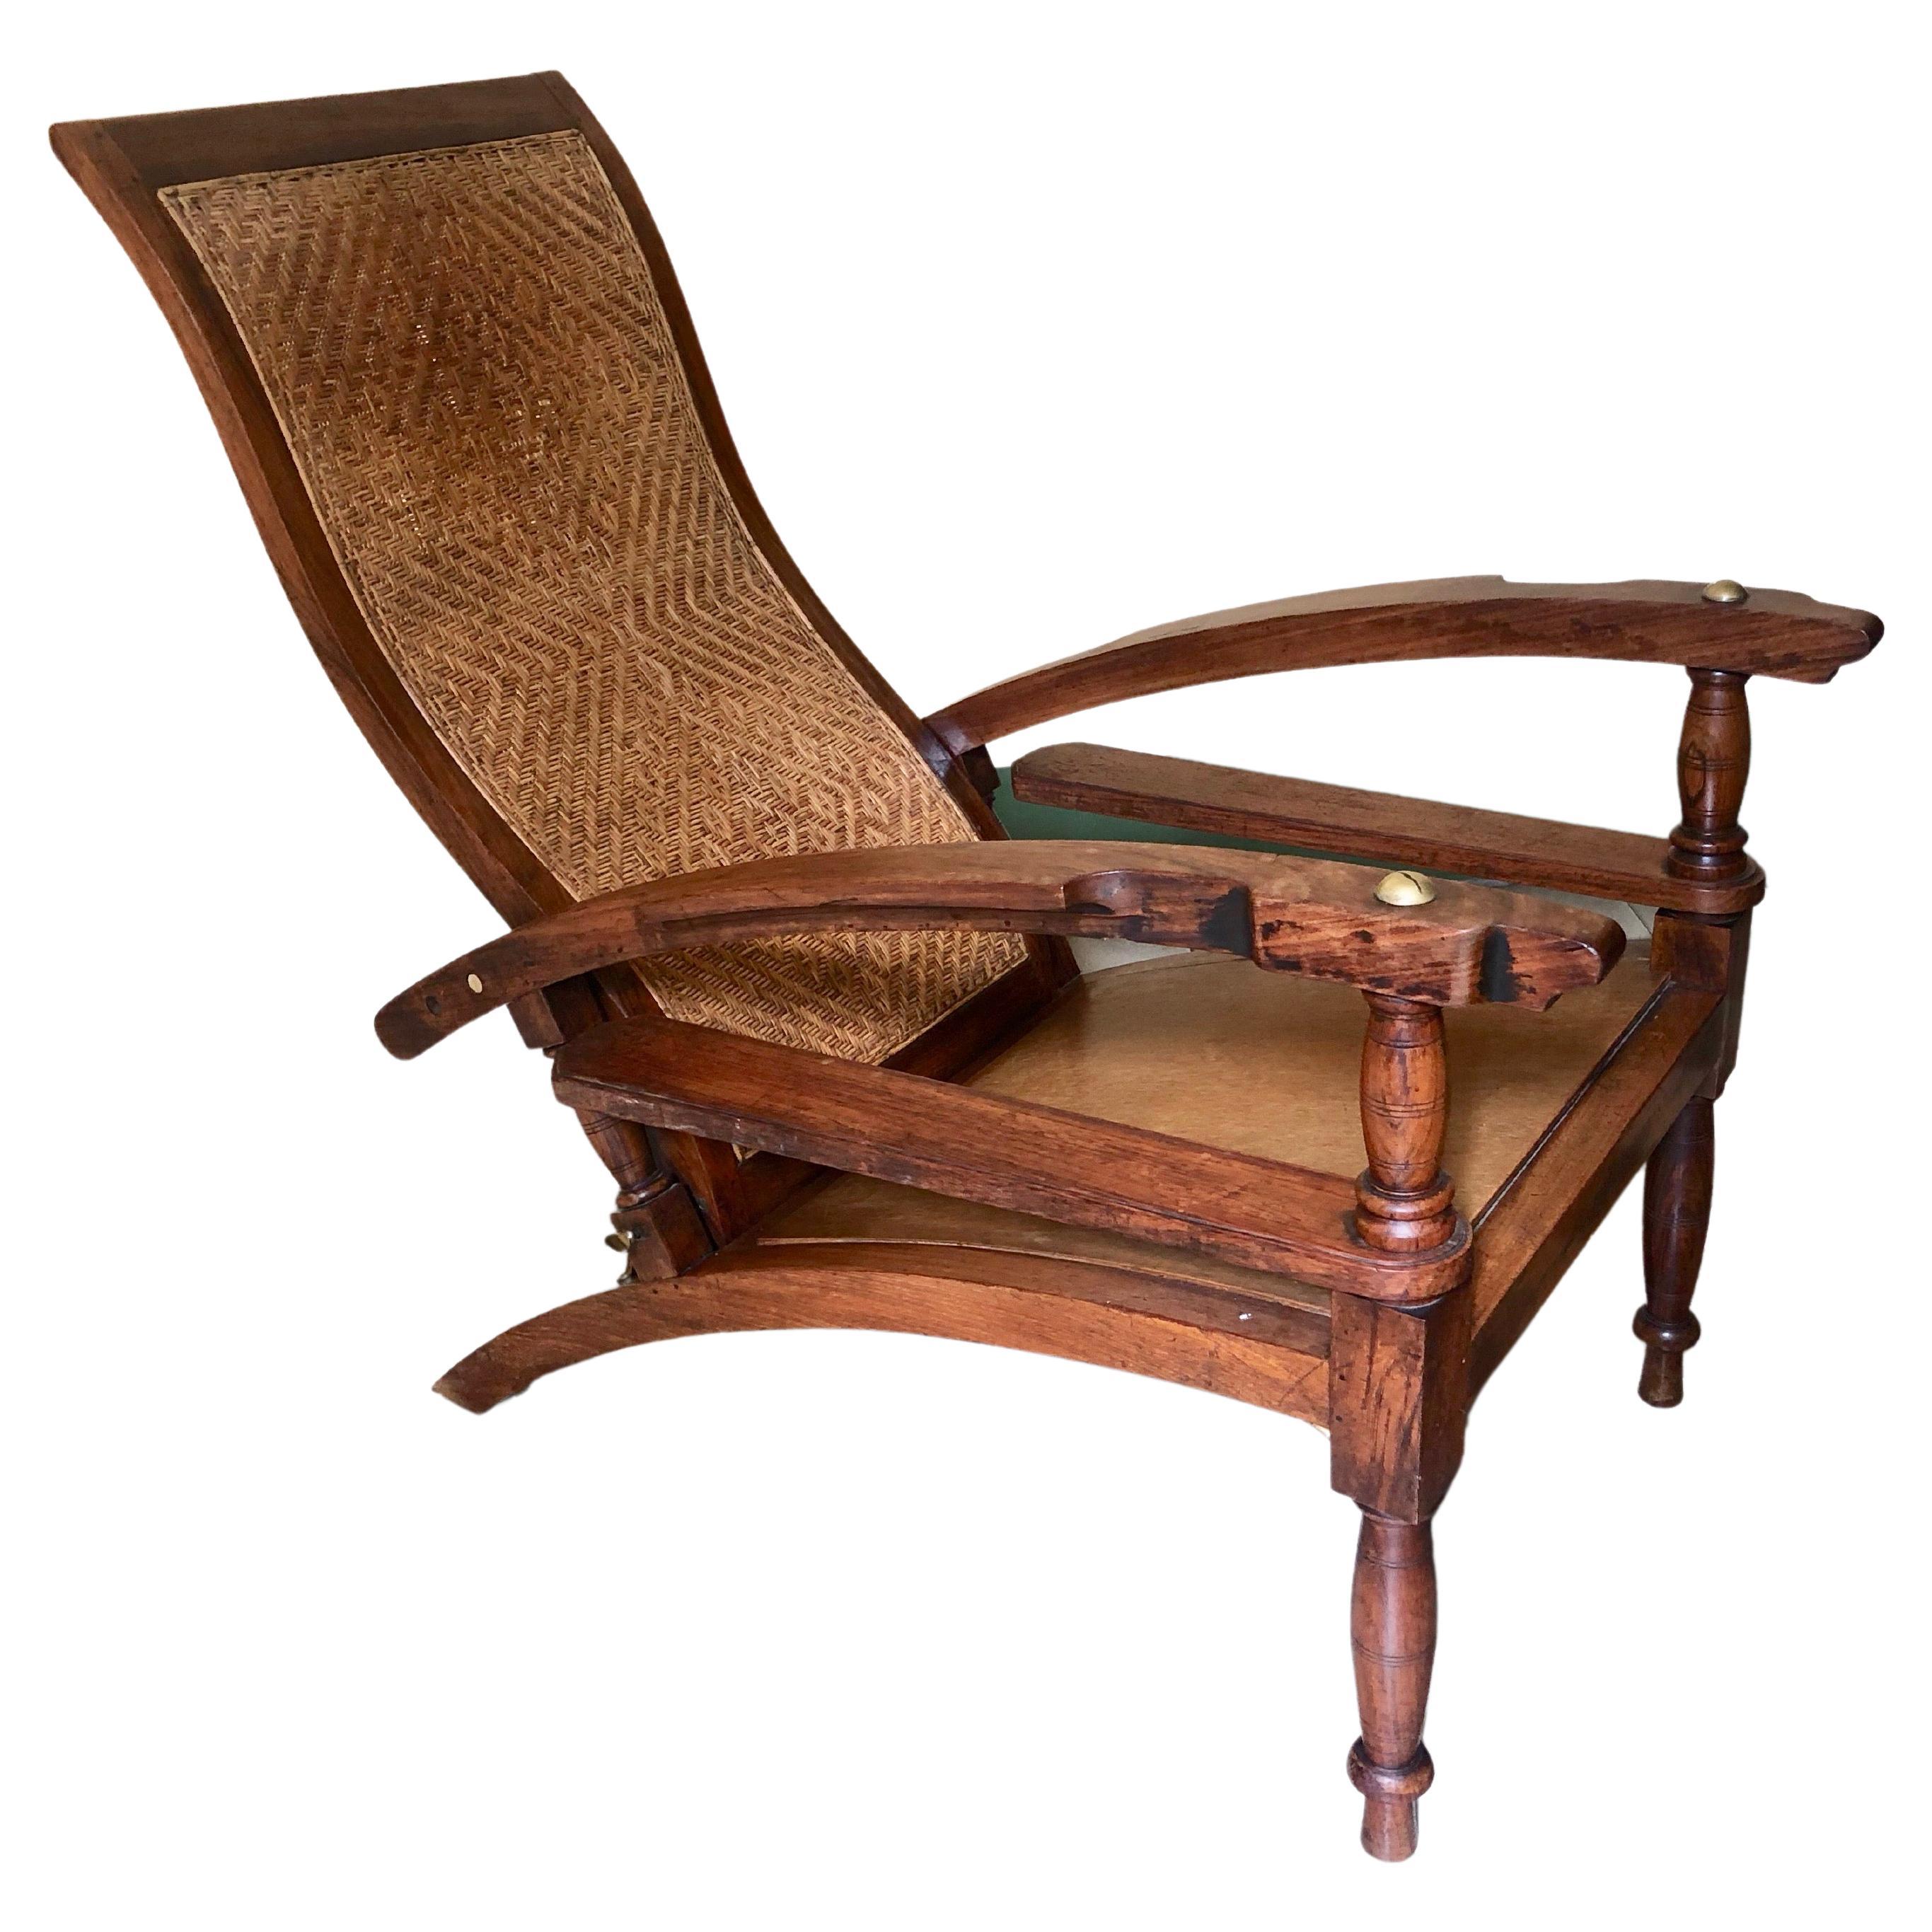 Unique Jugendstil Arm Chair made in 1908